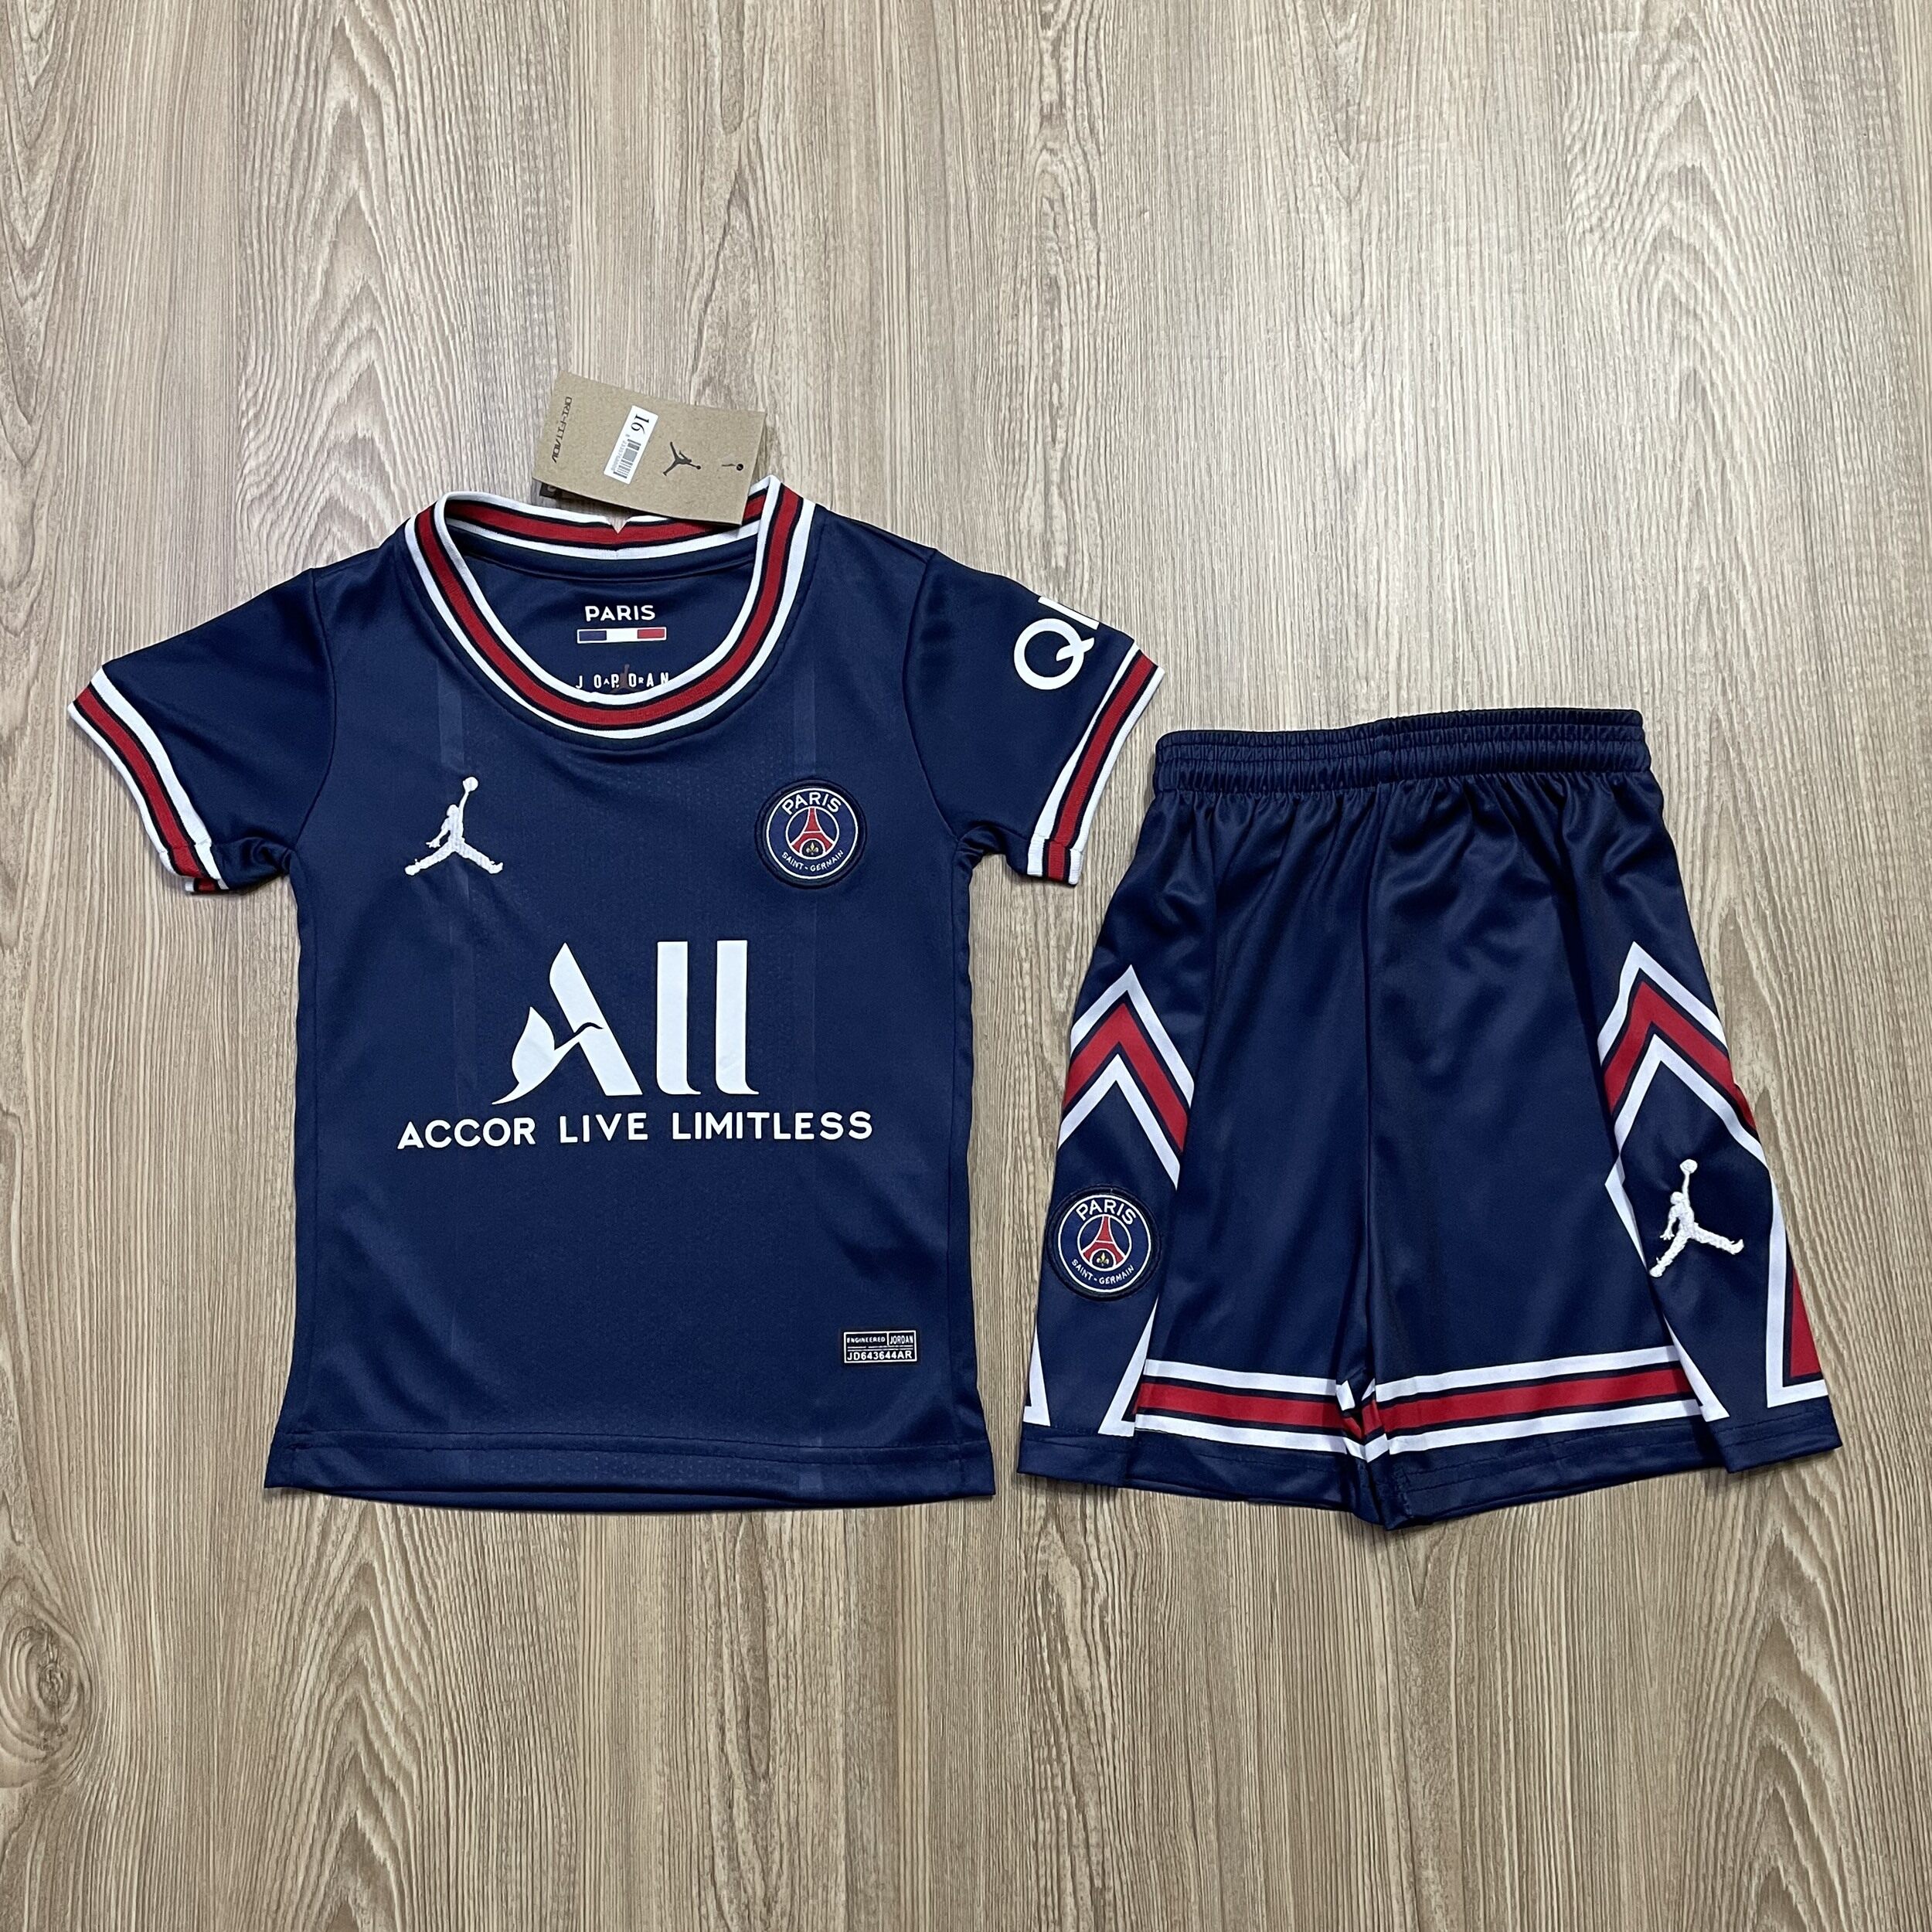 ชุดบอลเด็ก Paris ชุดกีฬาเด็กทีม เสื้อทีมเชลซี ซื้อครั้งเดียวได้ทั้งชุด (เสื้อ+กางเกง) ตัวเดียวในราคาส่ง สินค้าเกรด-A